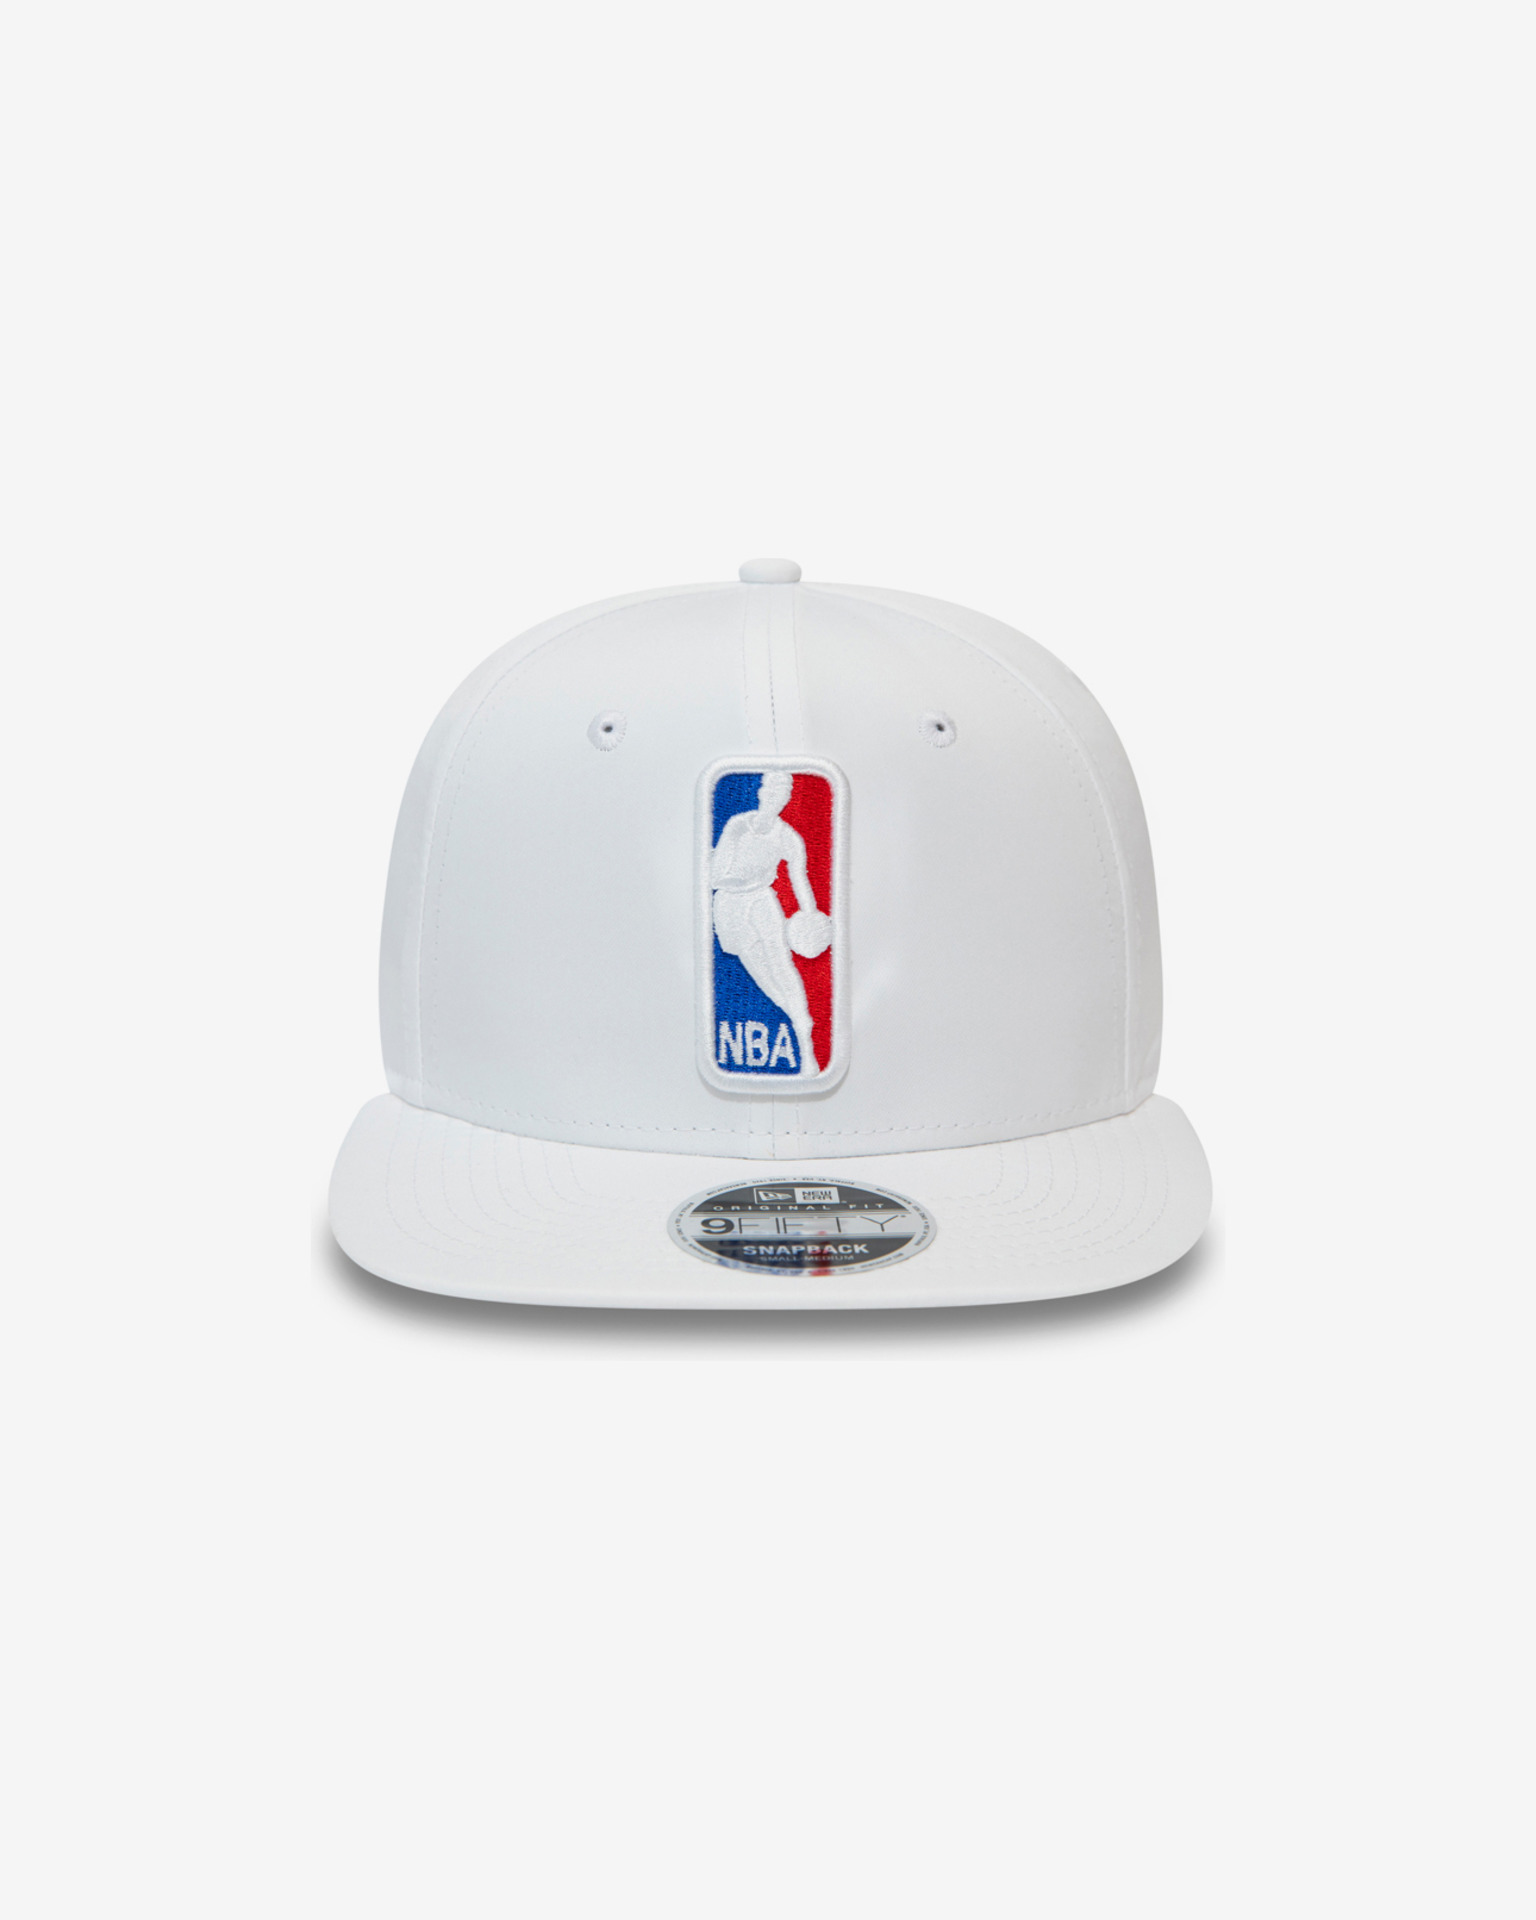 Levi's® X New Era® NBA Cap - White